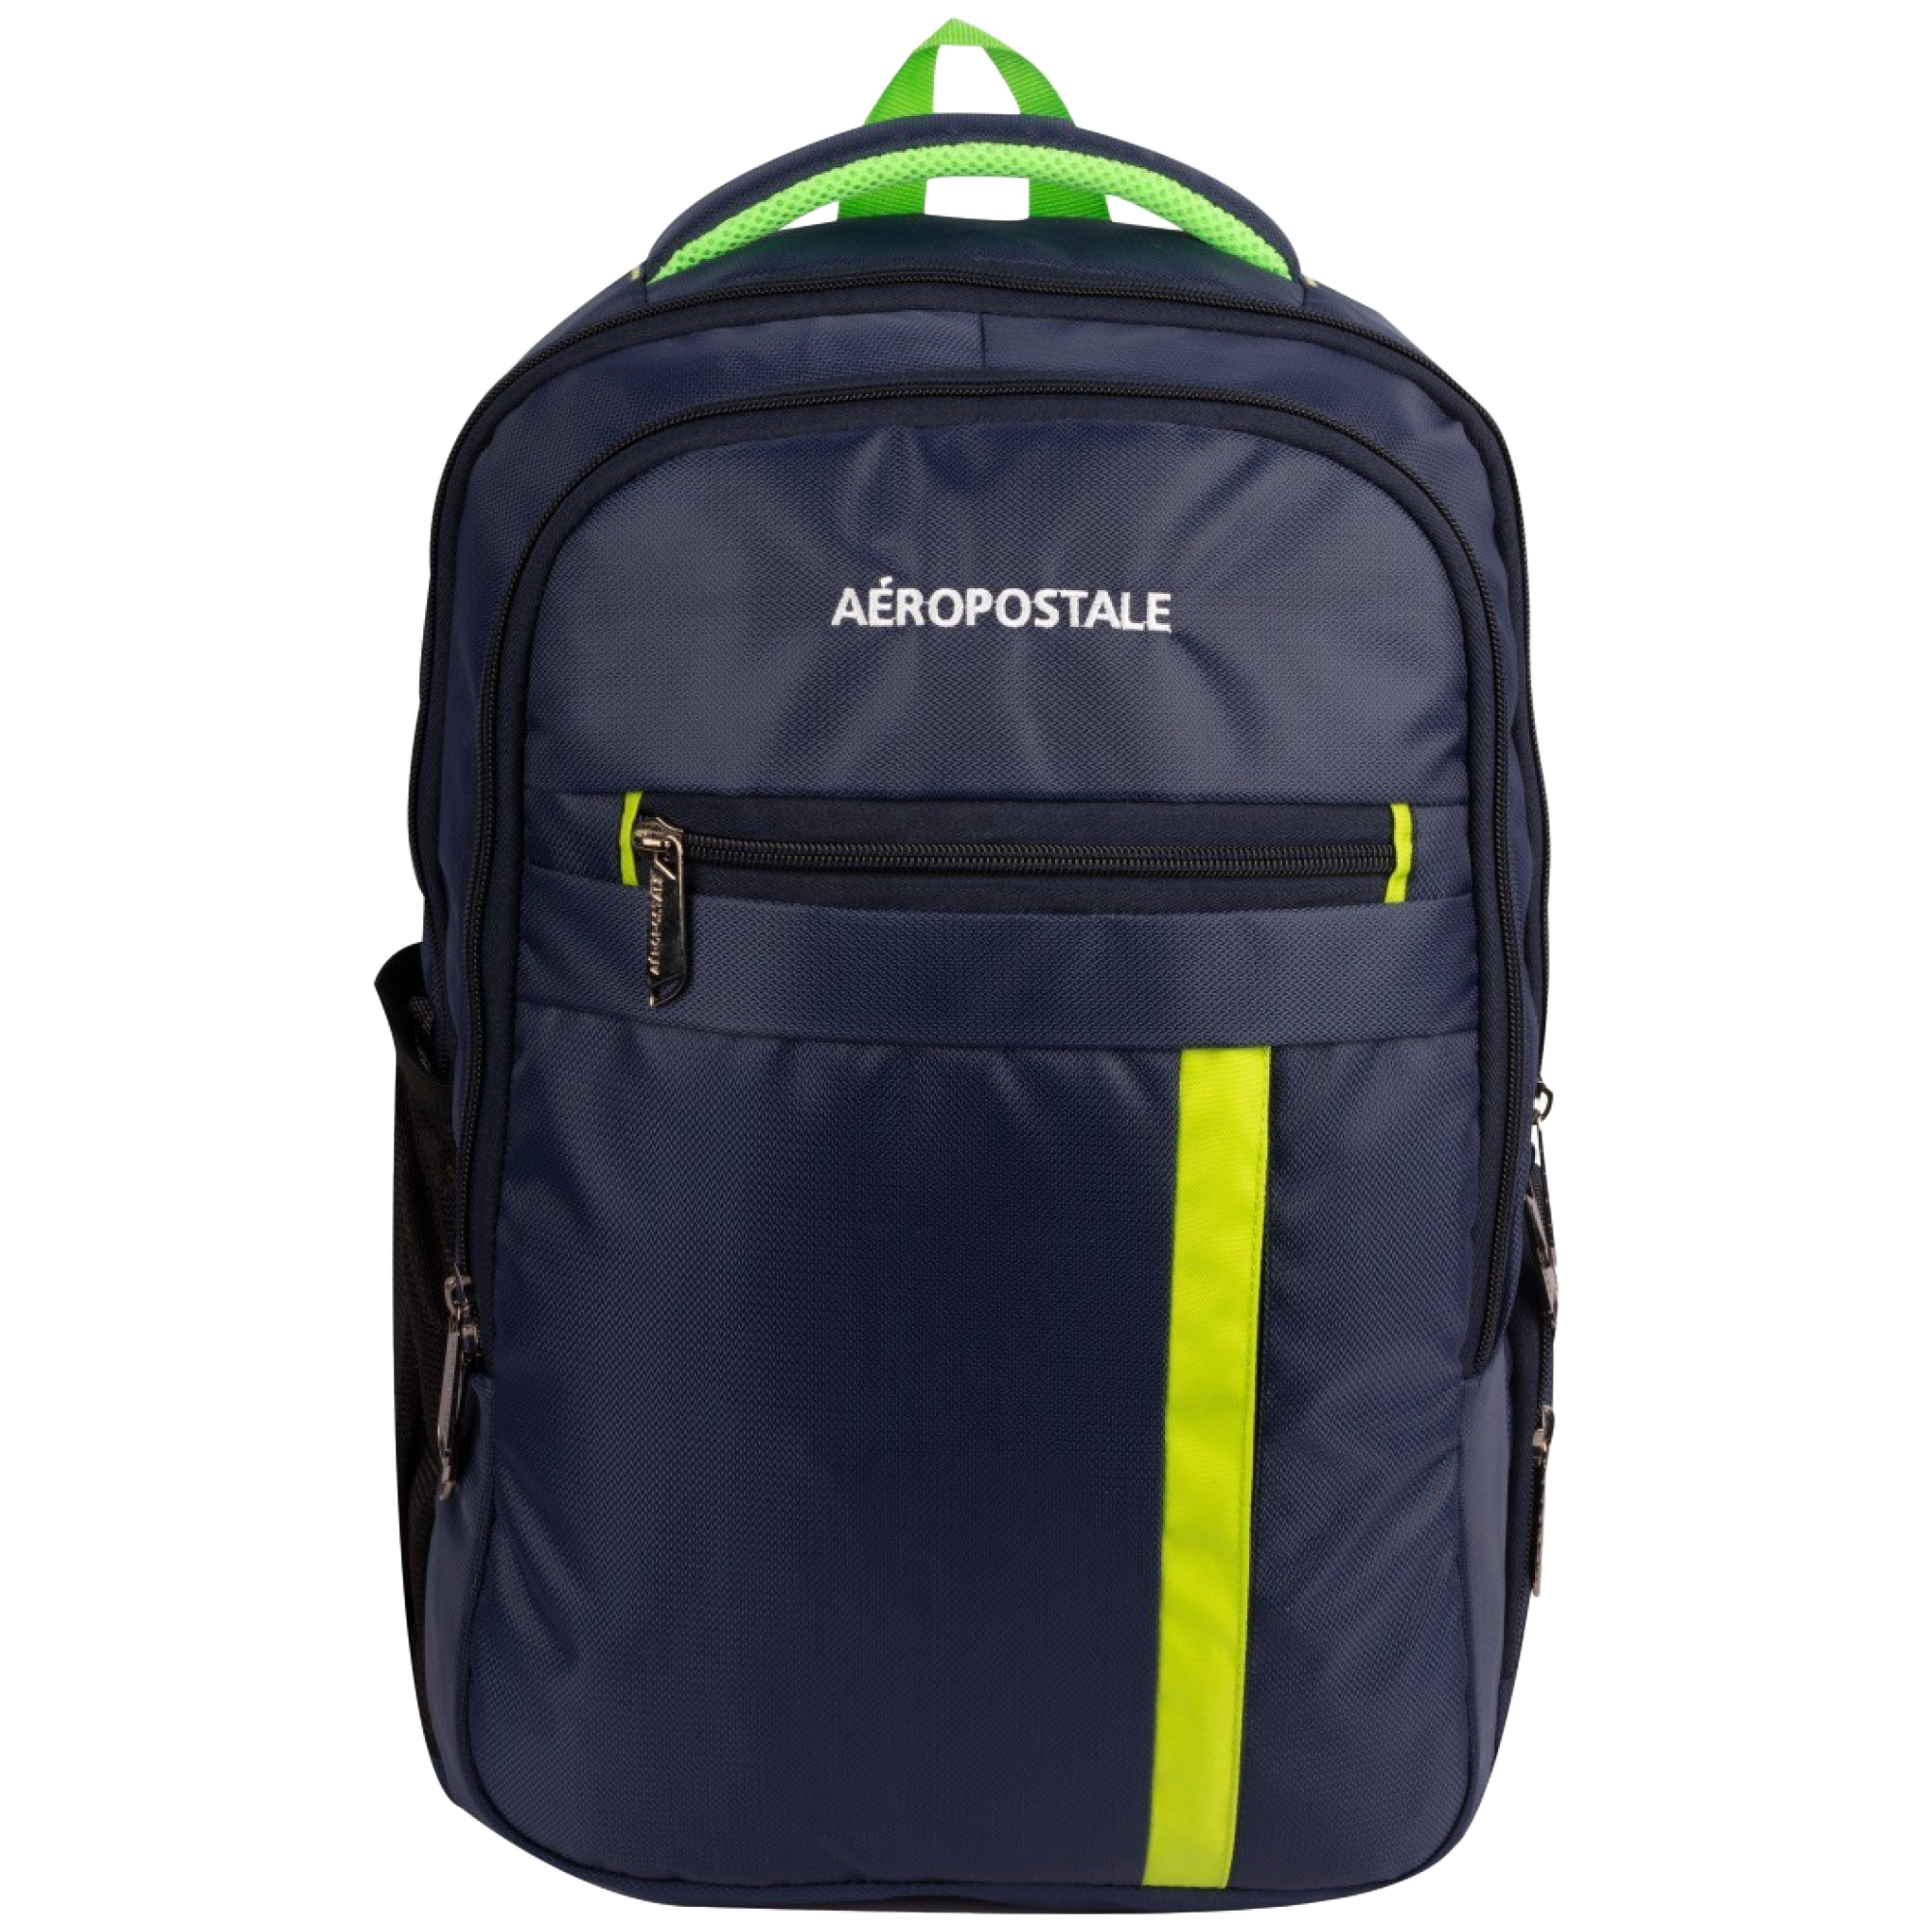 Aeropostale Ever Onwards 20 Litres Nylon Backpack (Waterproof, AERO-BP-1002-N BLU, Blue)_1